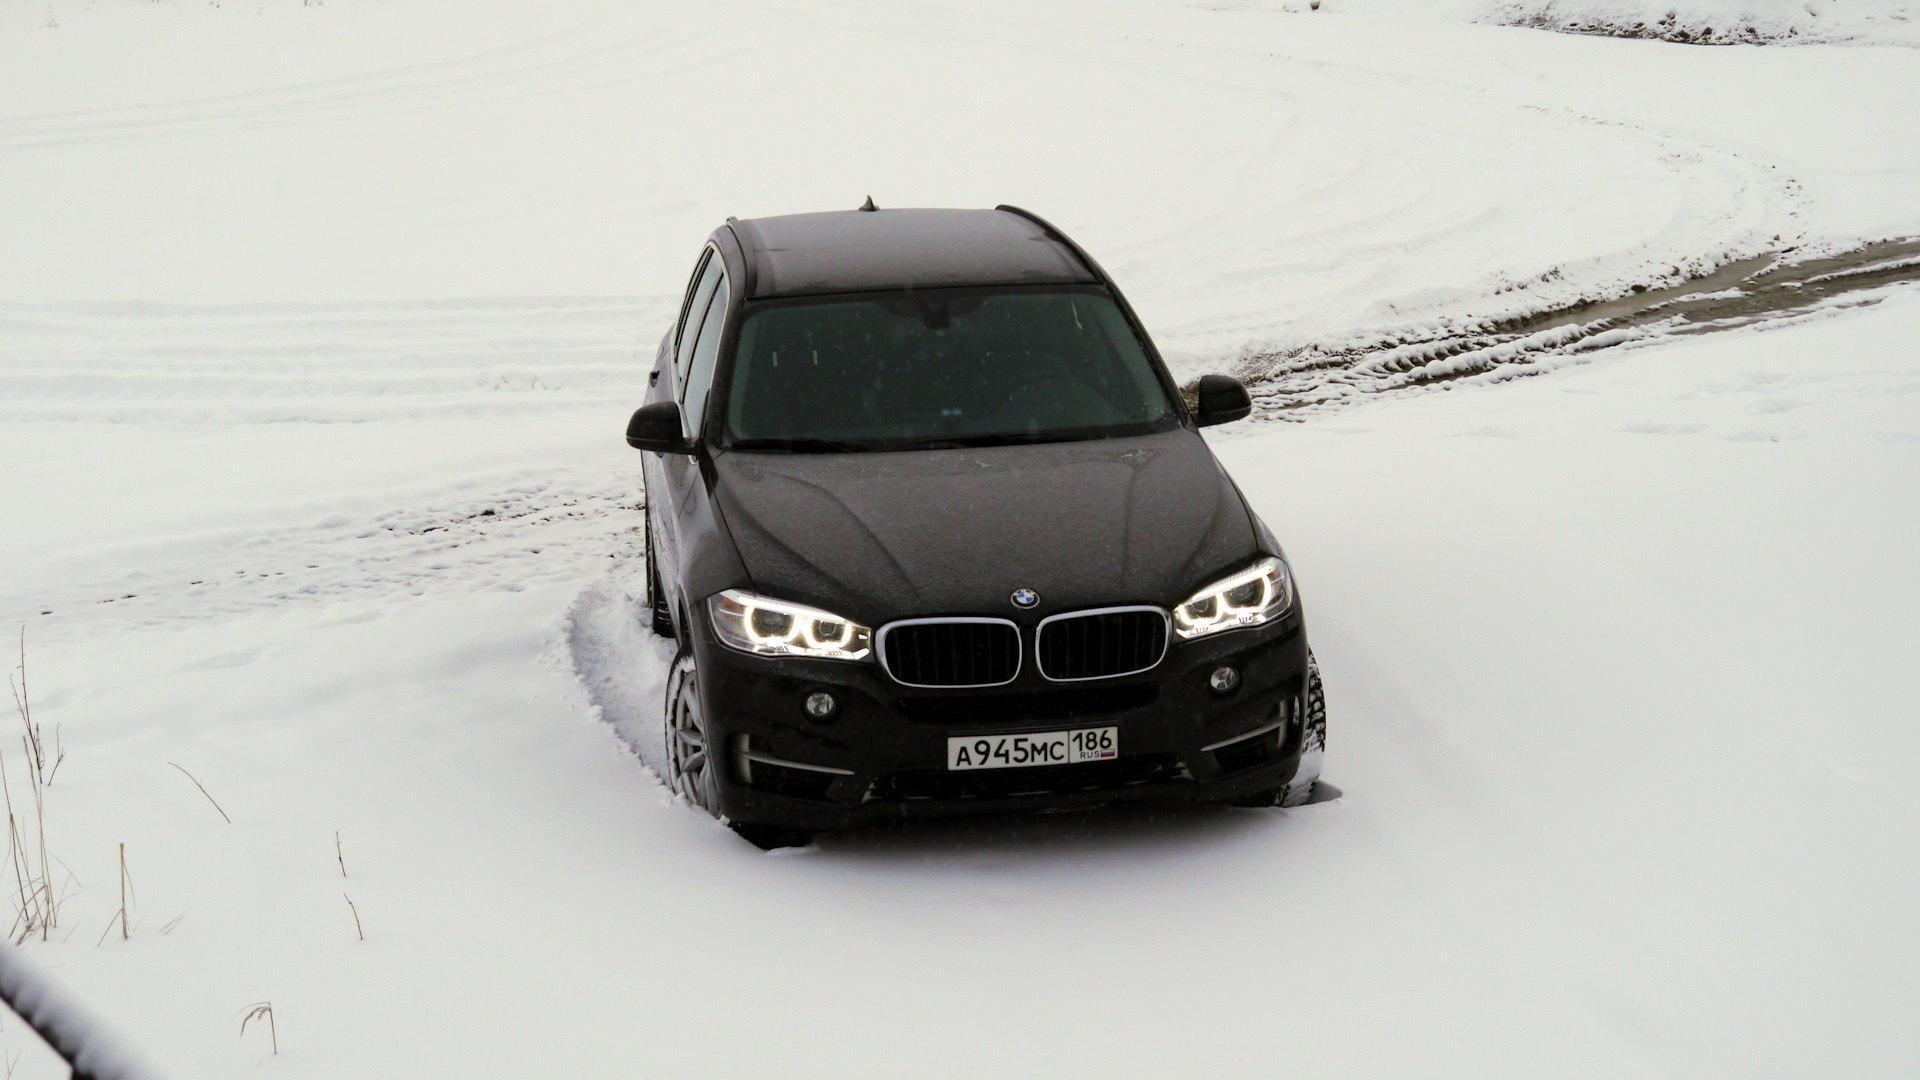 Лобовой х5 е70. БМВ х5 е70 черный зима. BMW x5 m5 зима. BMW x5 25d. BMW x5 e70 drive2.